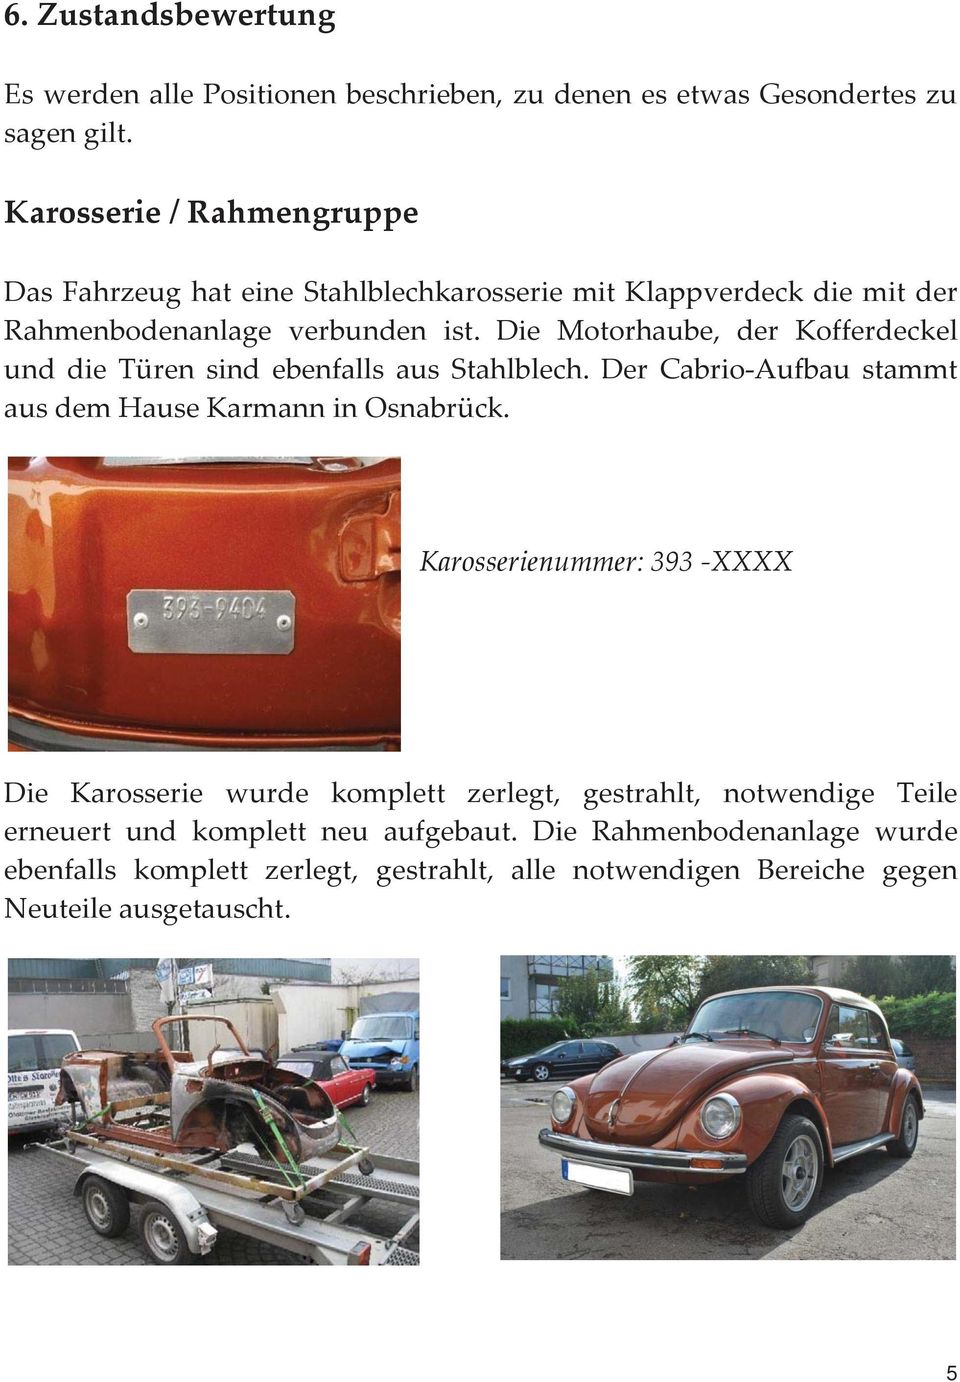 Die Motorhaube, der Kofferdeckel und die Türen sind ebenfalls aus Stahlblech. Der Cabrio-Aufbau stammt aus dem Hause Karmann in Osnabrück.